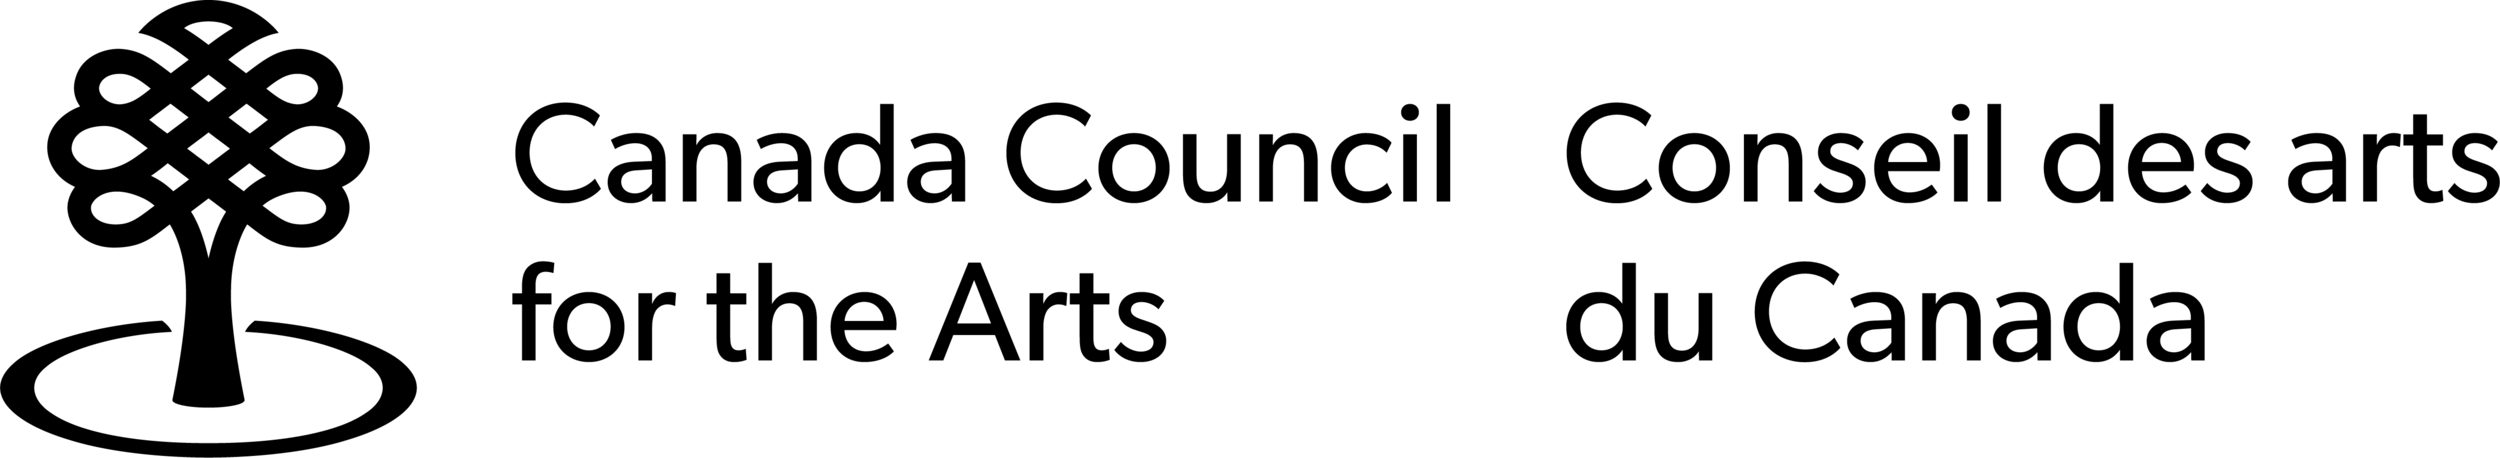 CCFA_Logo_K.png